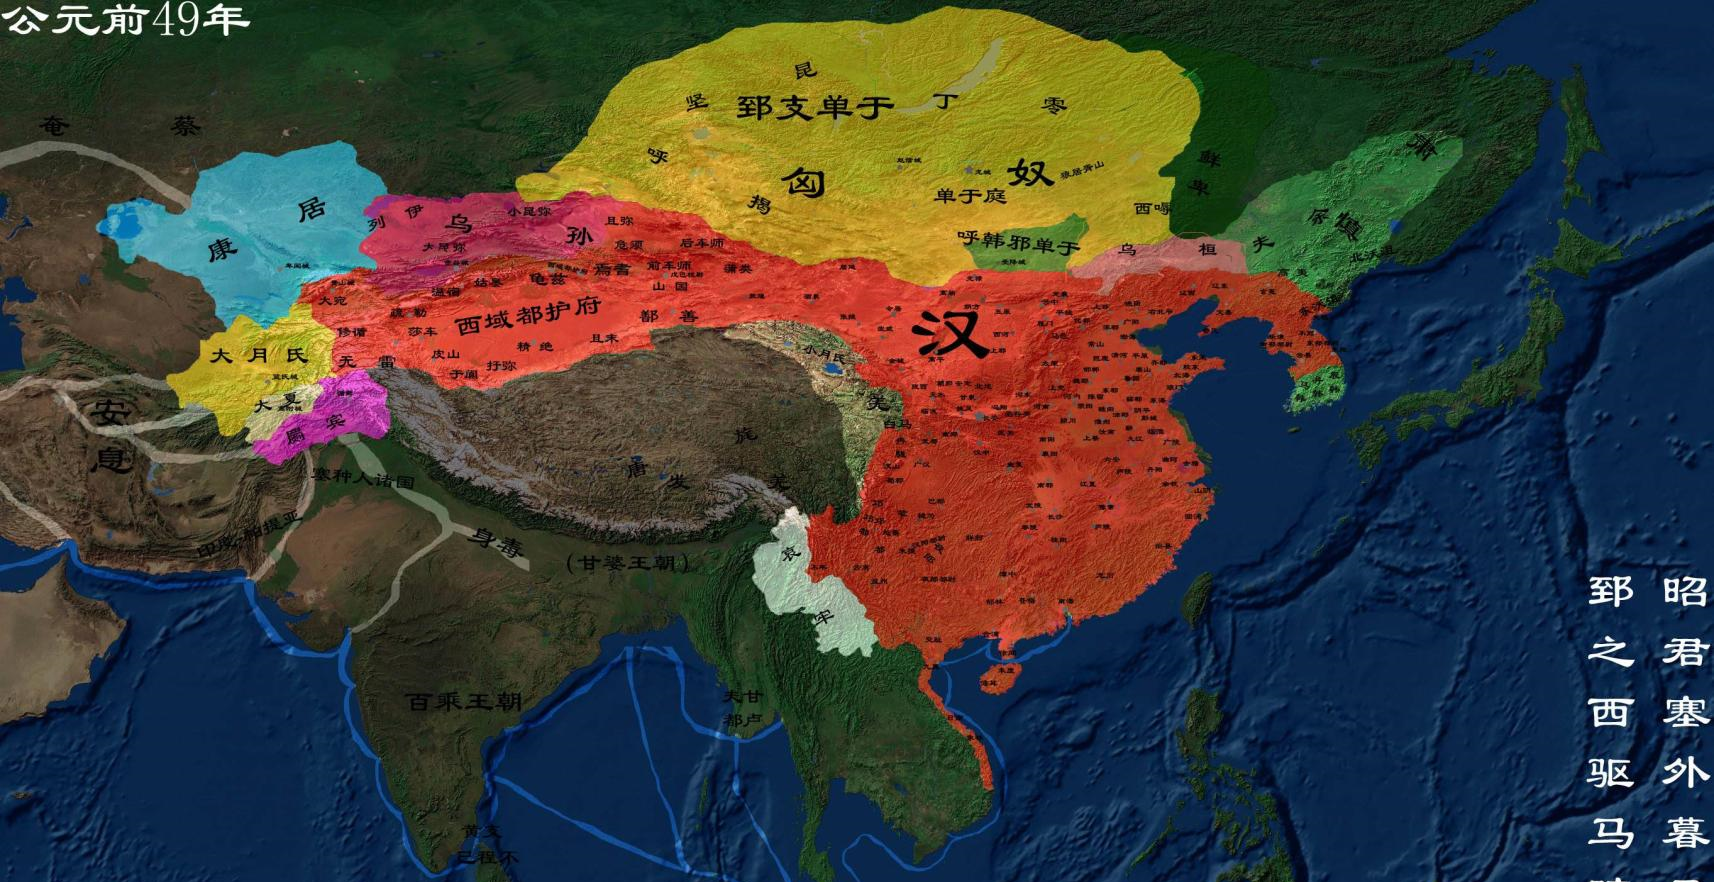 图文解读中国五千年历史和疆域演变，高清历史地图可收藏 - 知乎